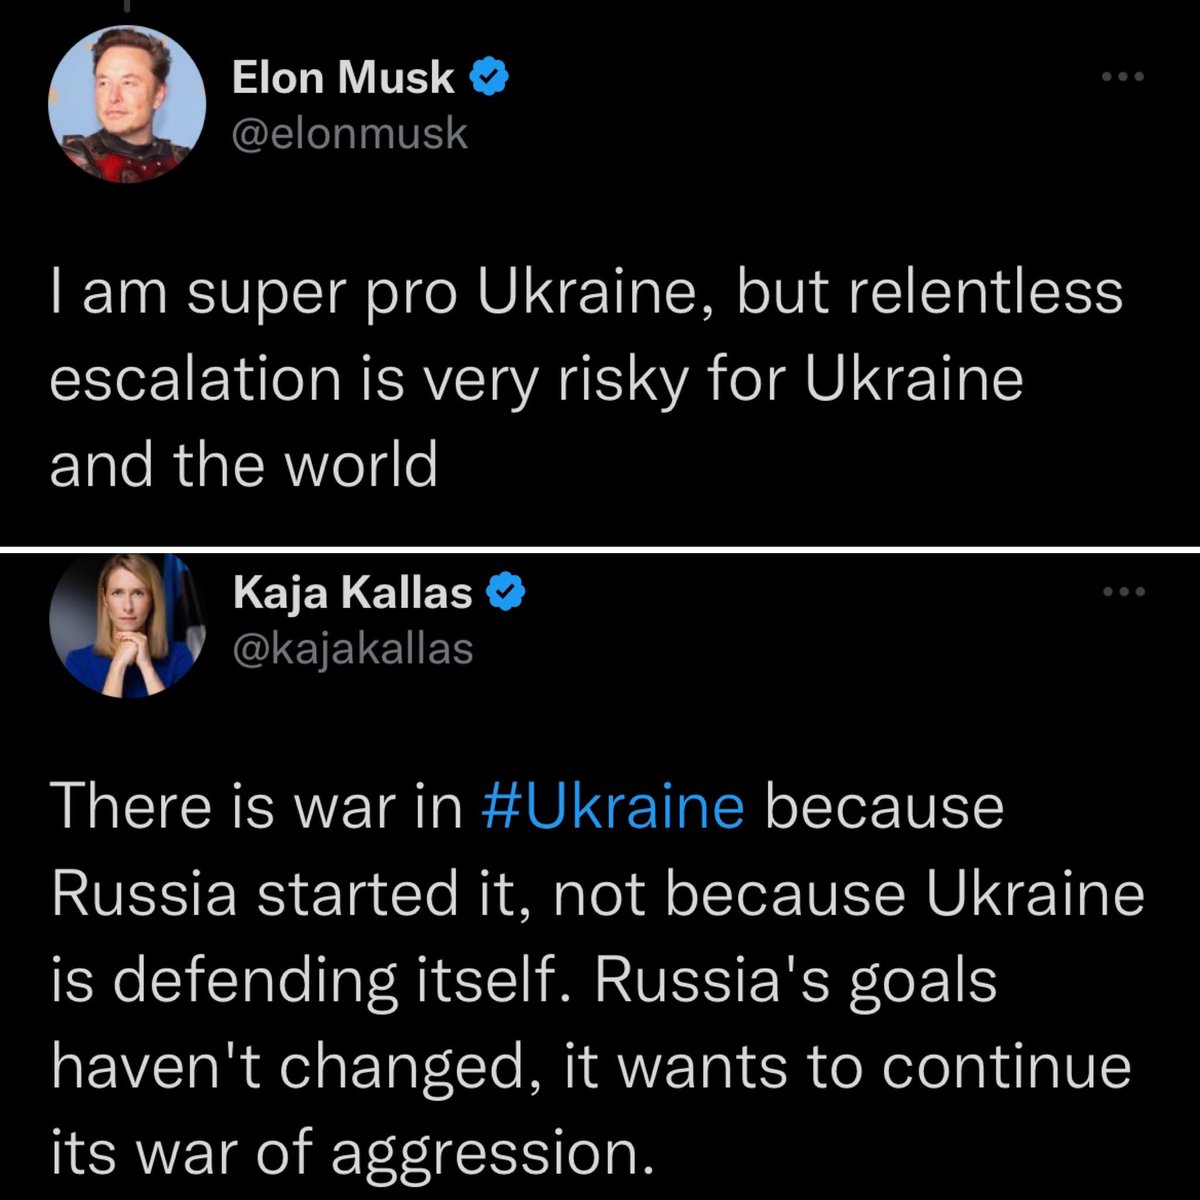 Elon Musk 🤮
Kaja Kallas 👏
Whose message do you support?